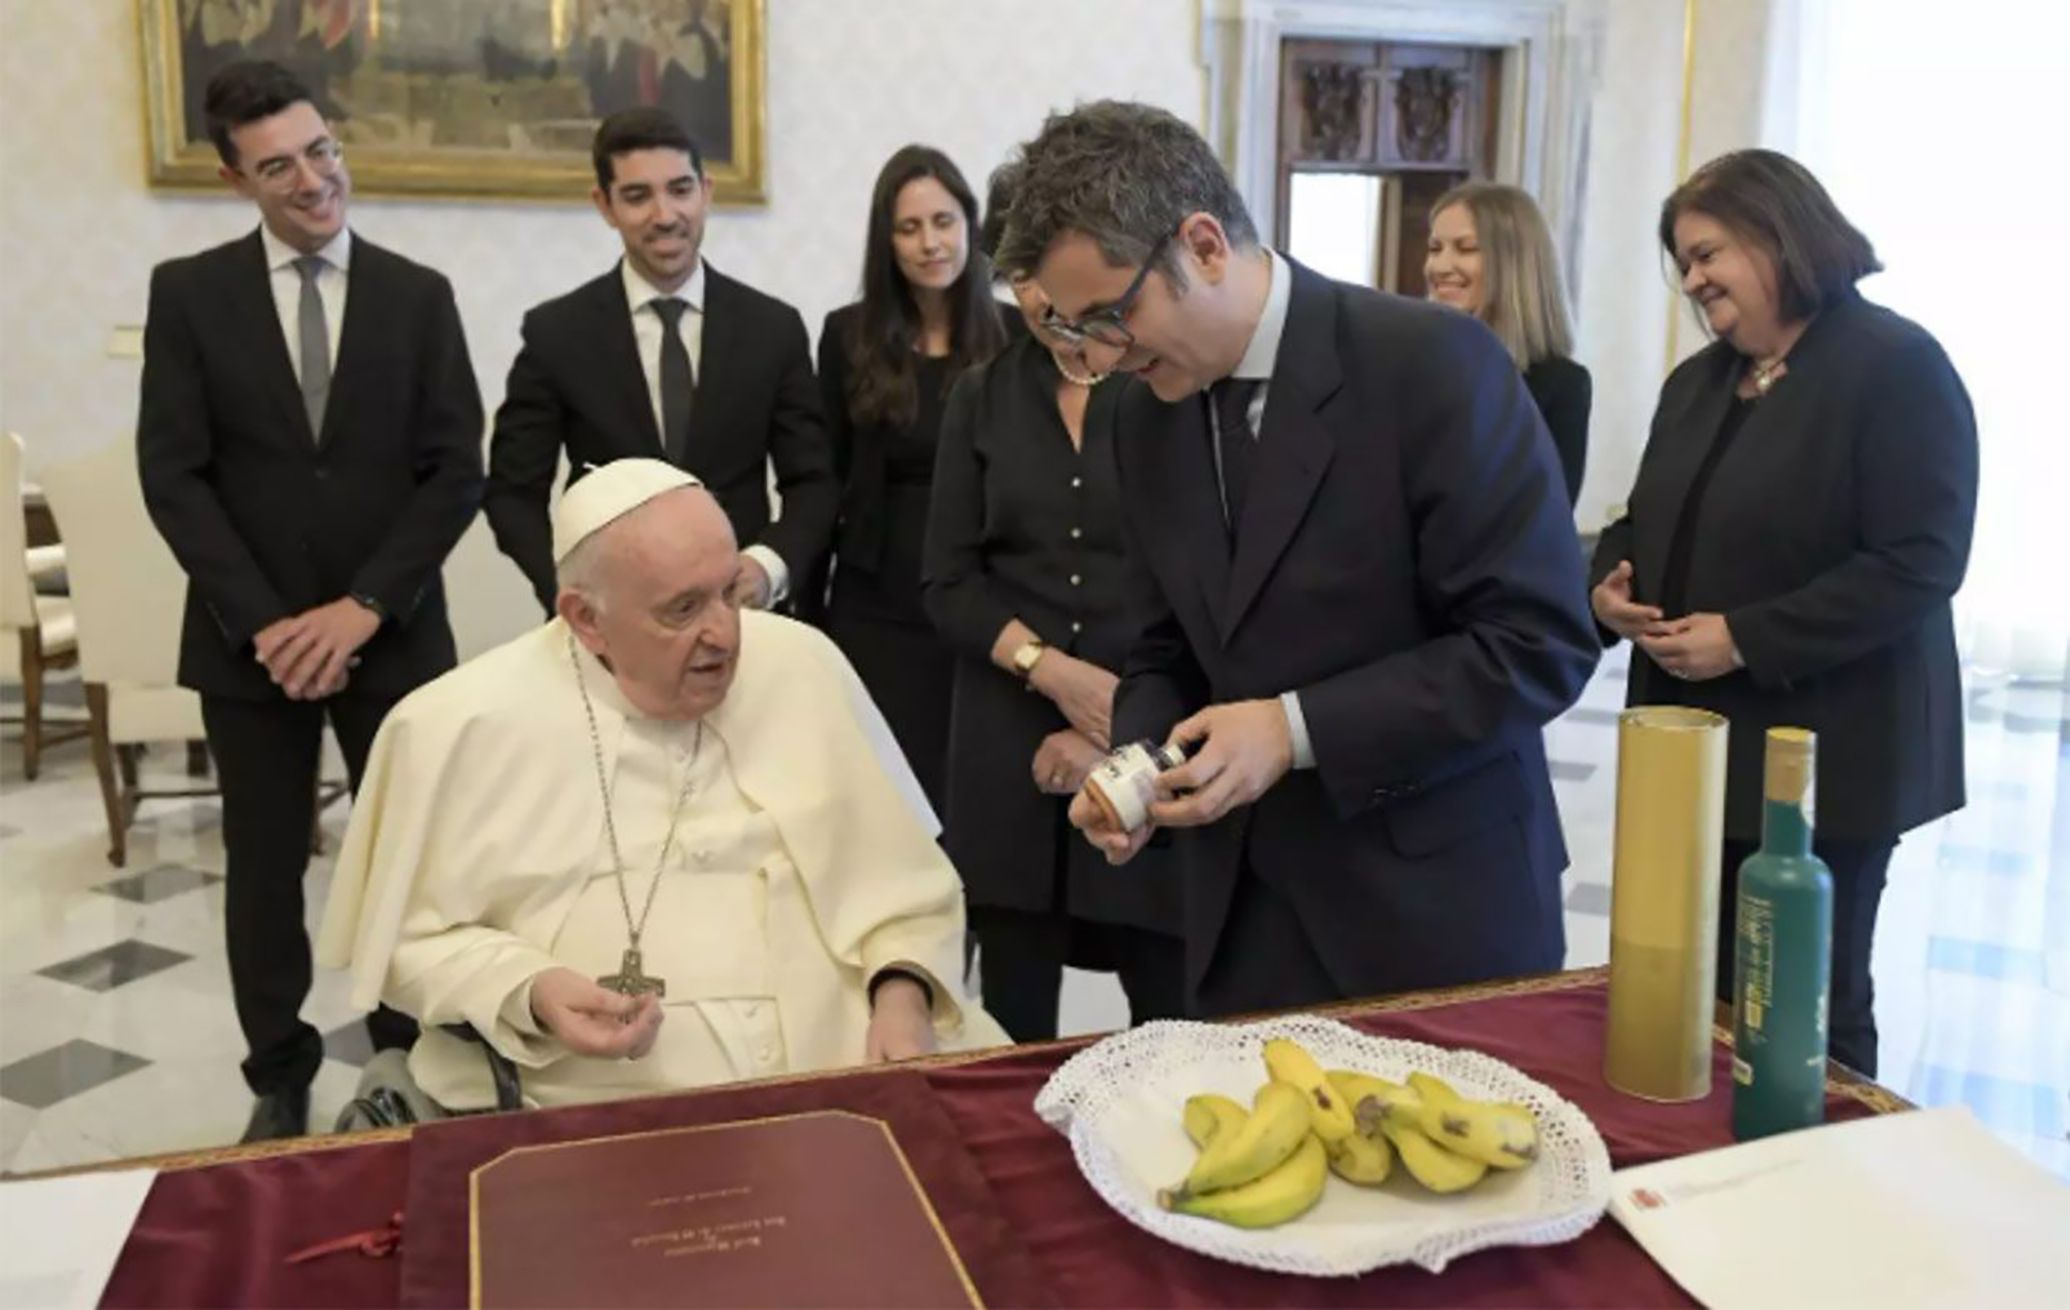 El ministro Bolaños regala al Papa plátanos de La Palma, azafrán de La Mancha y aceite de Jaén. Foto: Moncloa